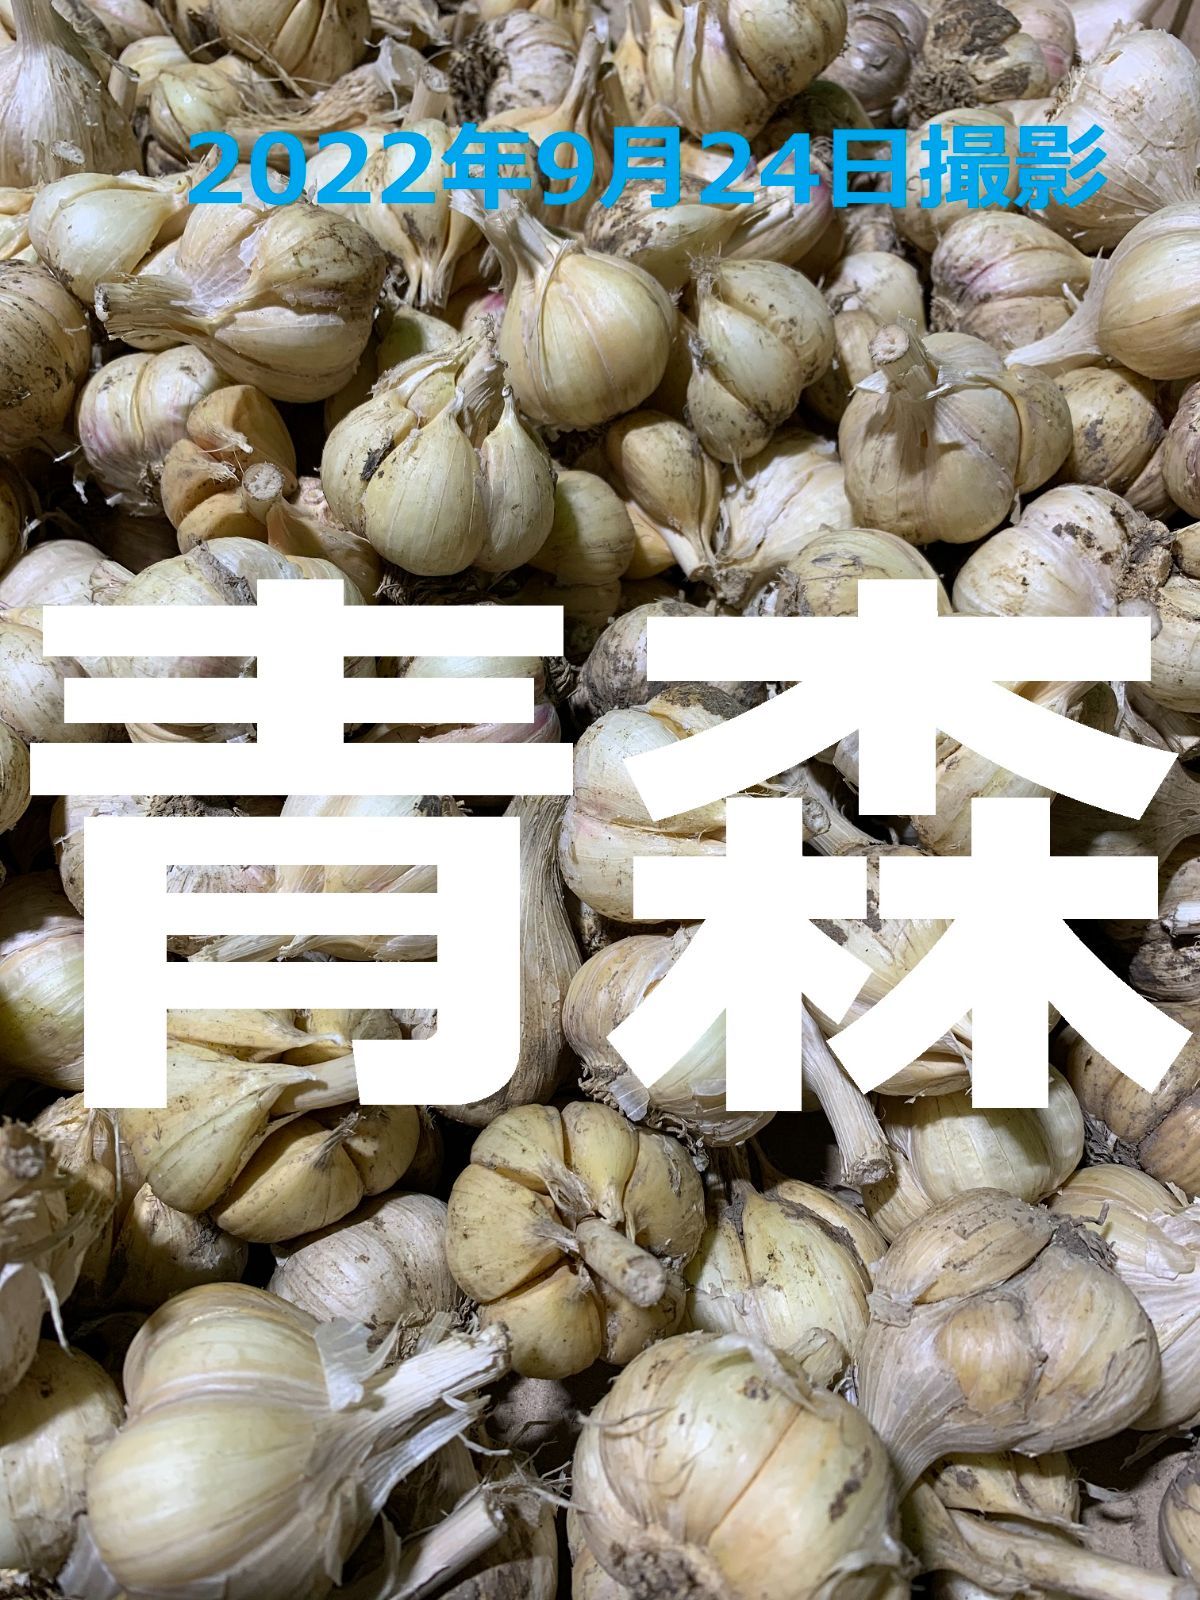 ニンニク青森県産バラニンニク10kgサイズSメイン - 野菜